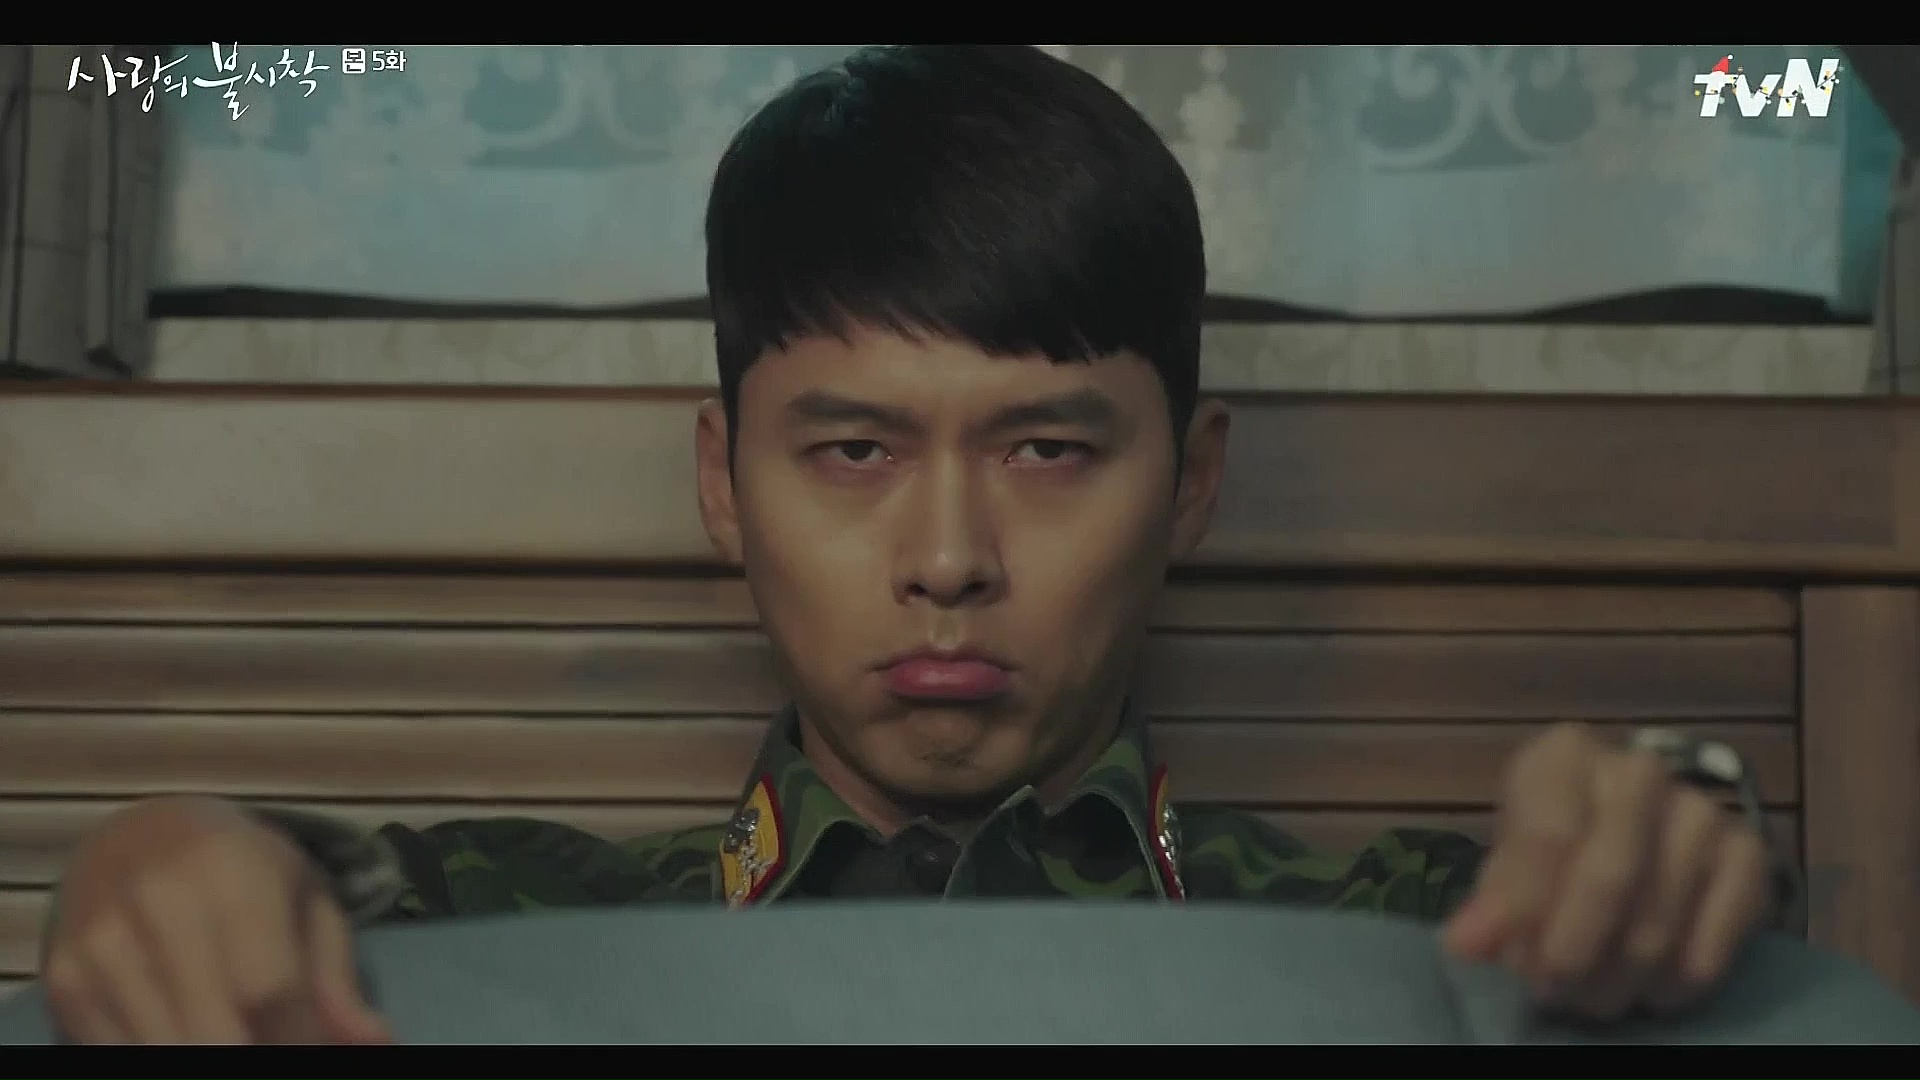 Crash Landing on You: Episode 1 » Dramabeans Korean drama recaps